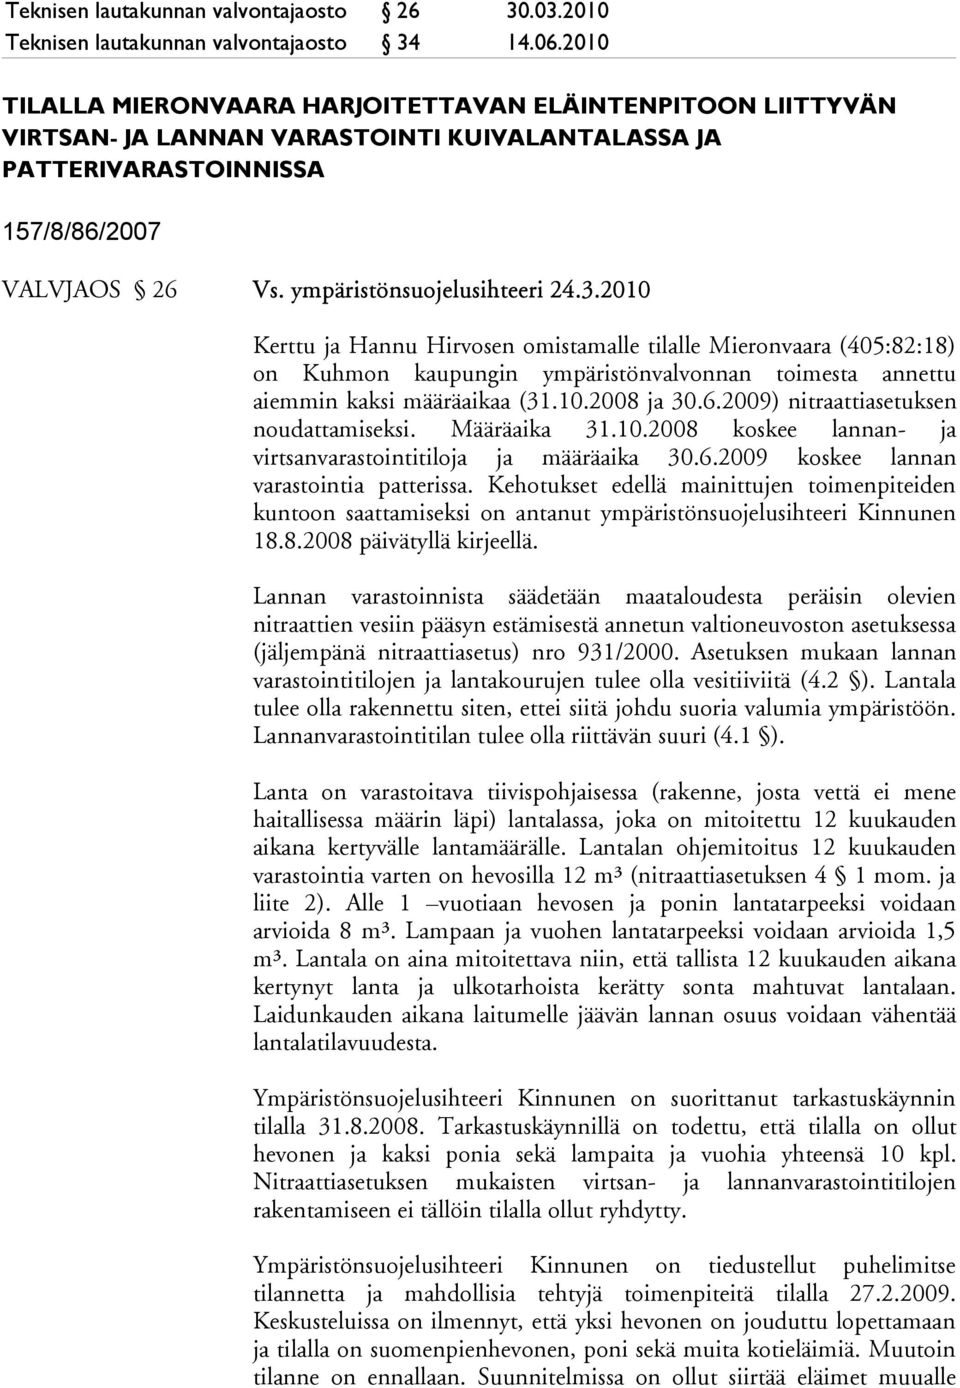 2010 Kerttu ja Hannu Hirvosen omistamalle tilalle Mieronvaara (405:82:18) on Kuhmon kaupungin ympäristönvalvonnan toimesta annettu aiemmin kaksi määräaikaa (31.10.2008 ja 30.6.